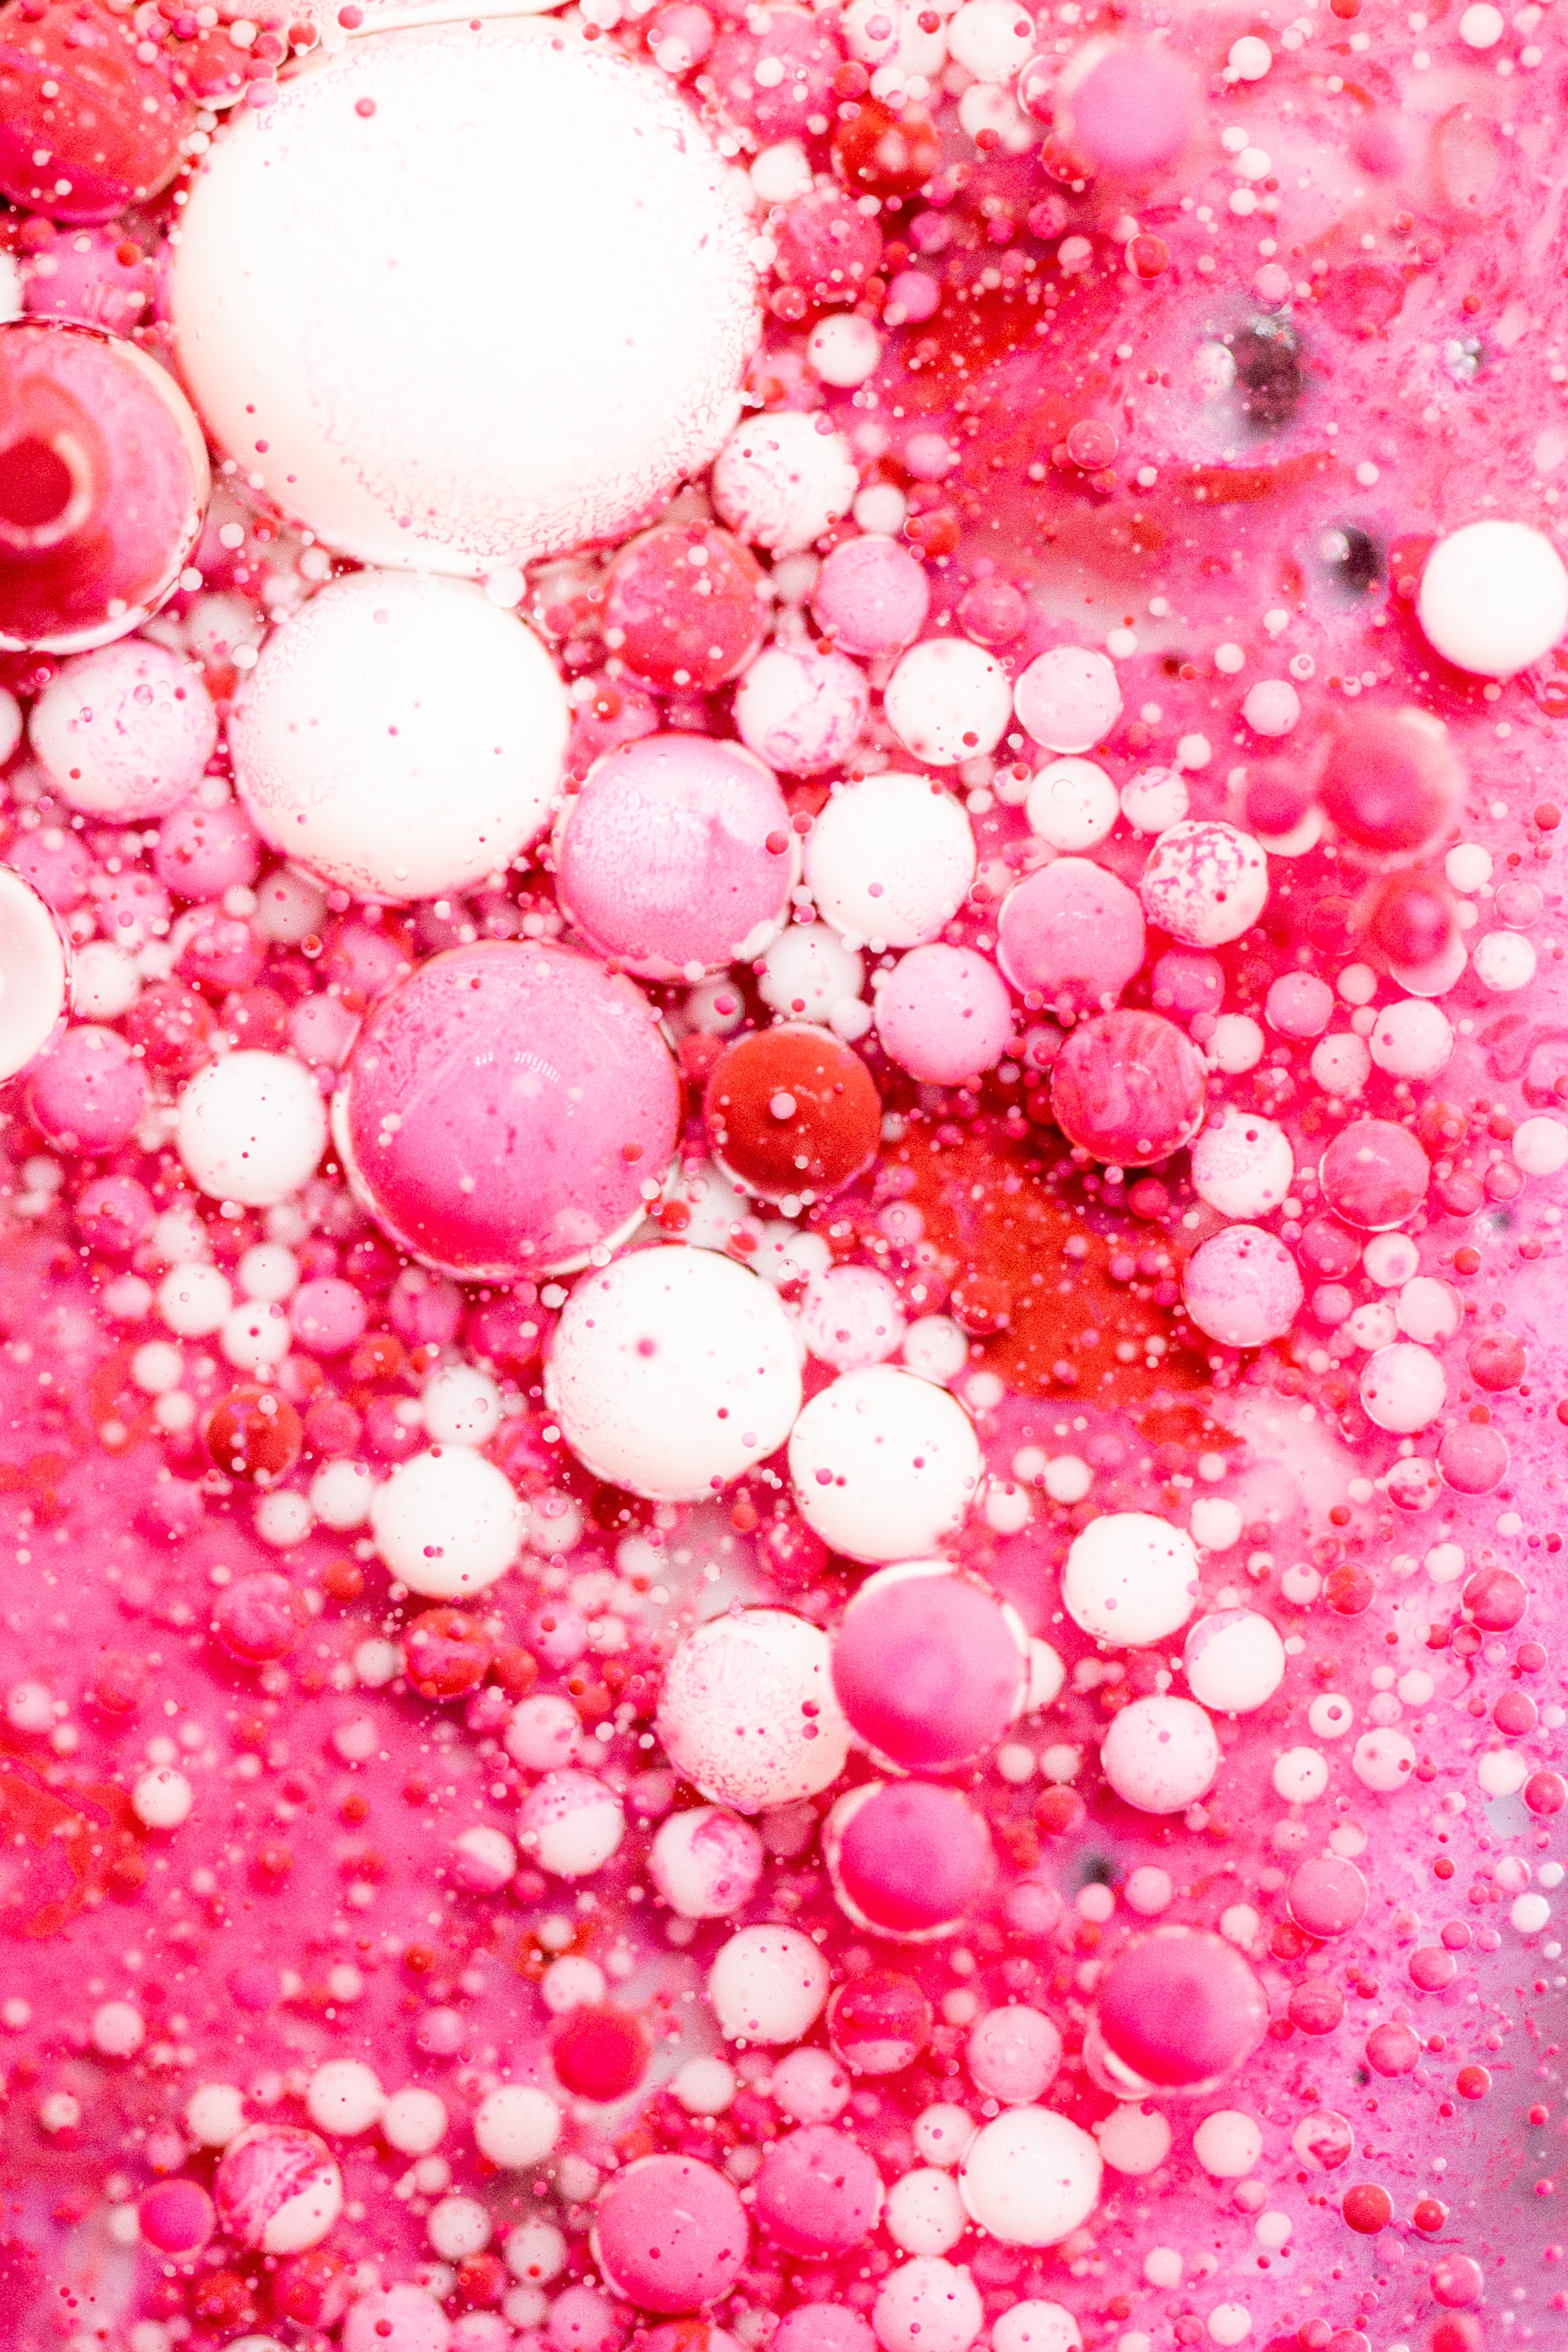 Скачать обои бесплатно Пузыри, Жидкость, Макро, Абстракция, Розовый картинка на рабочий стол ПК